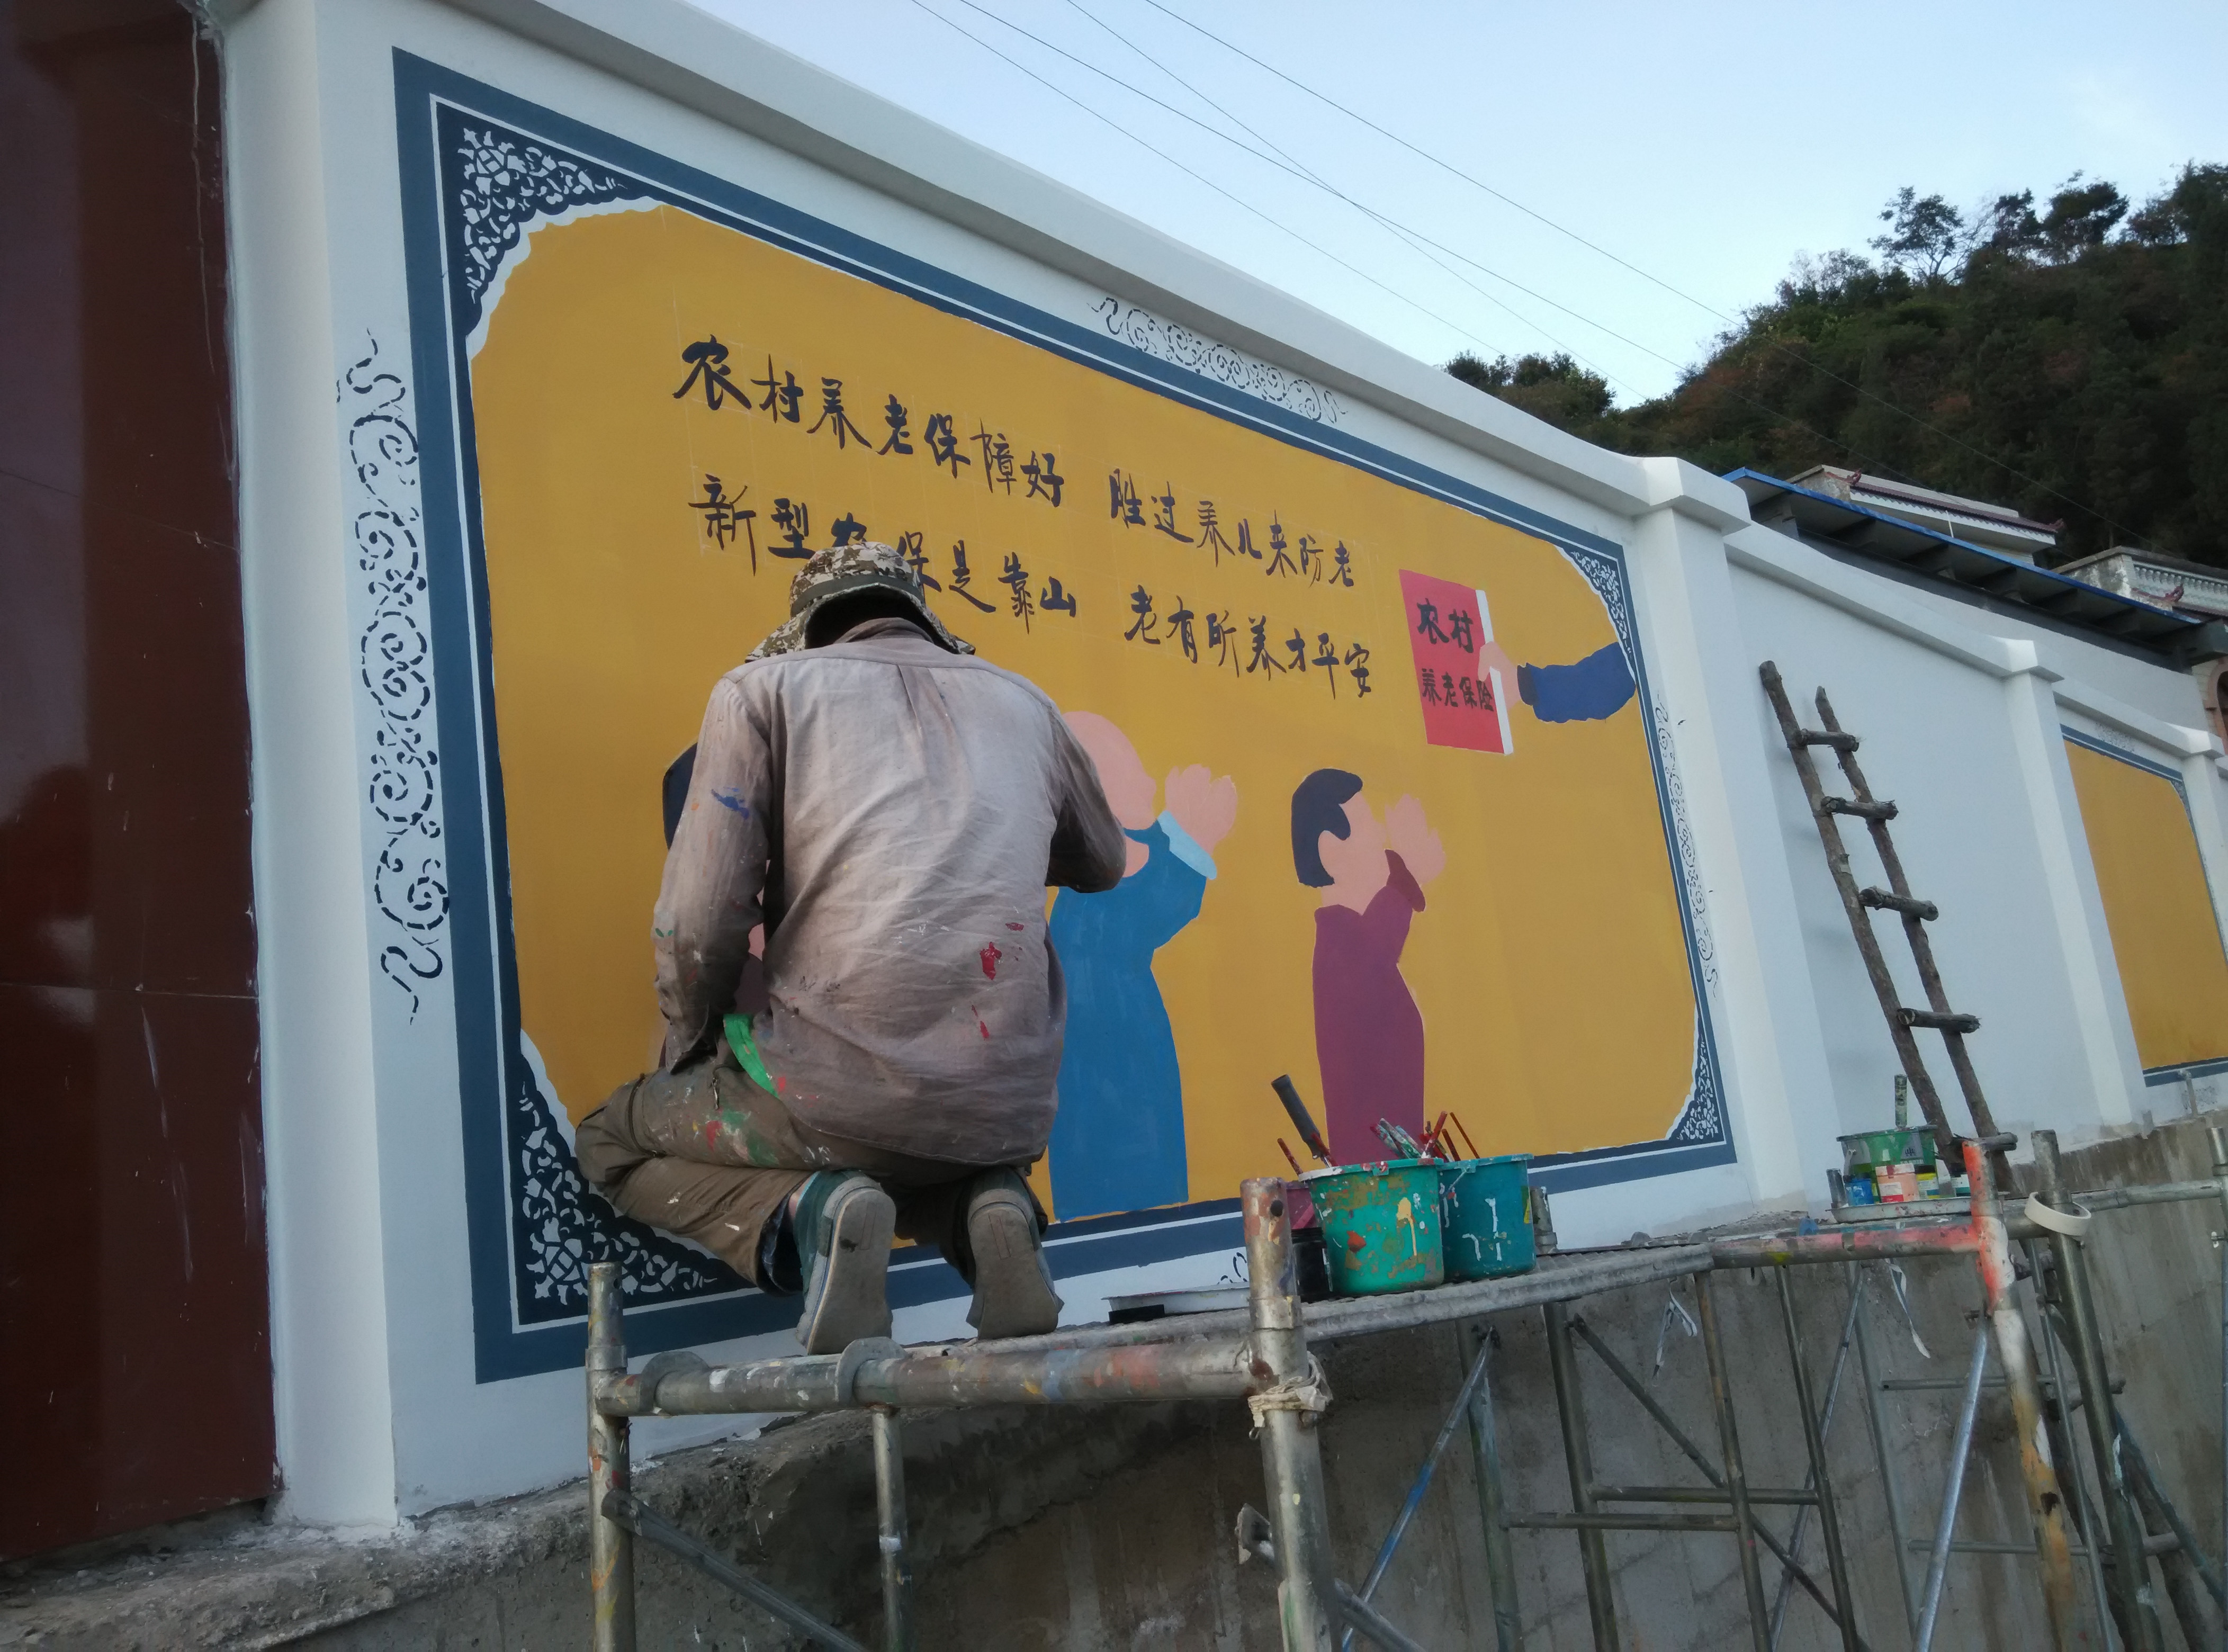 昆明墙体彩绘昆明墙画手绘公司昆明新农村建设彩绘文化墙壁画彩绘